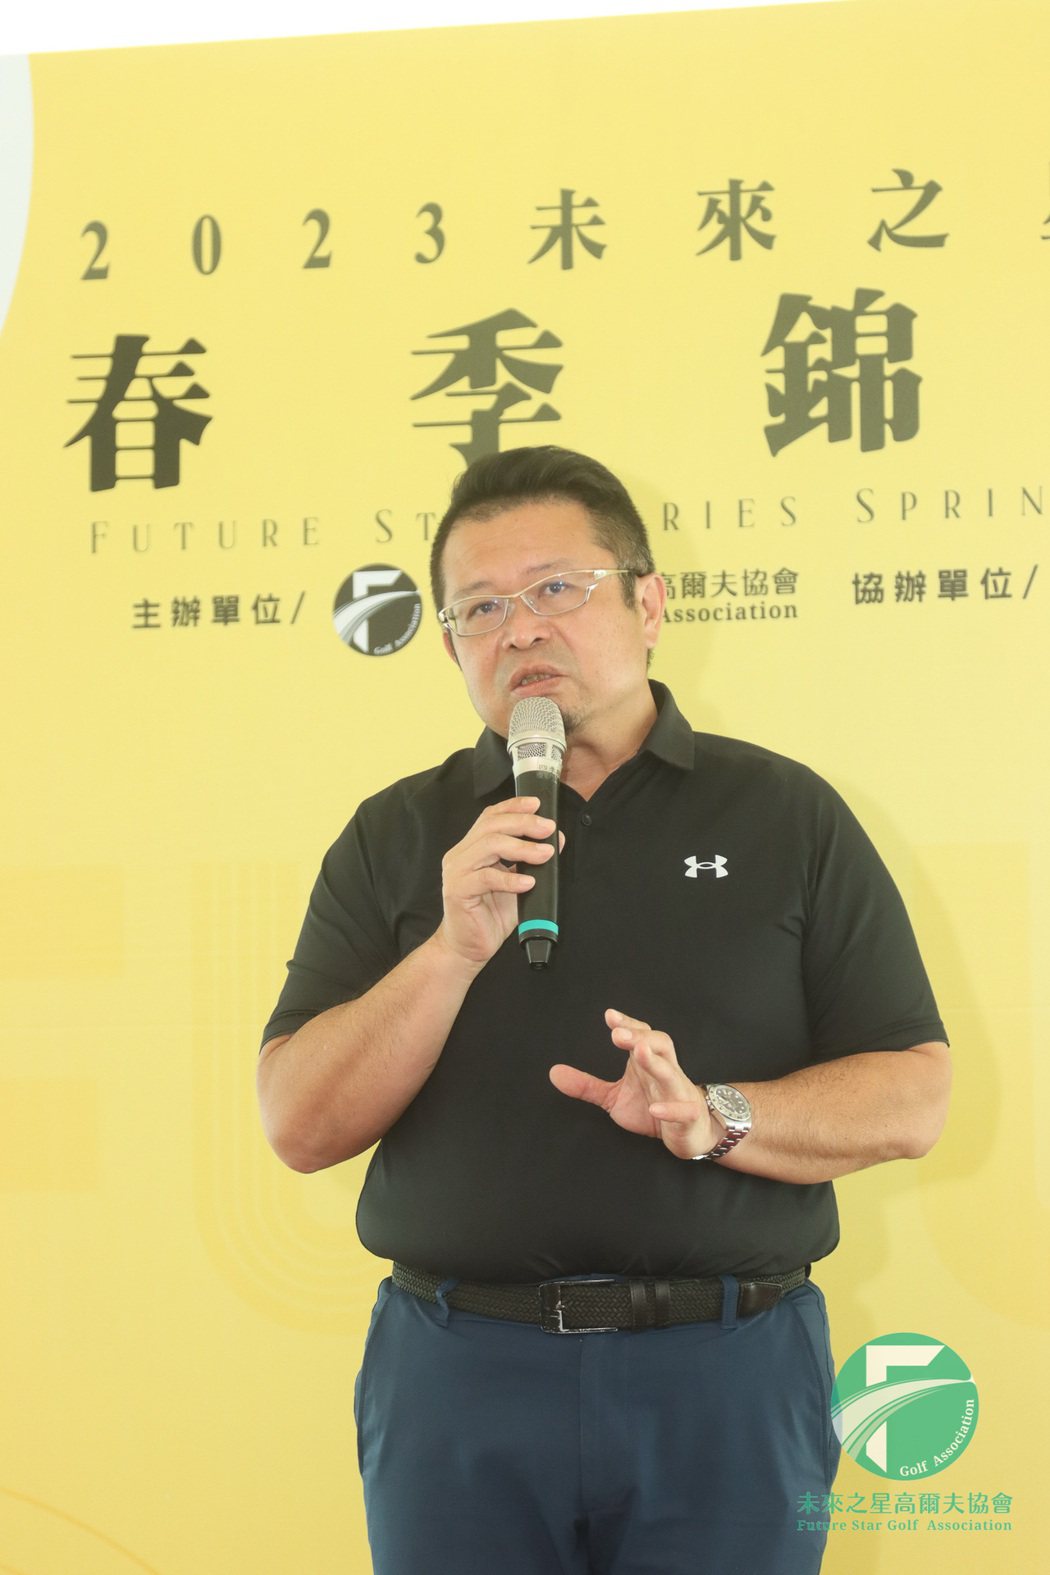 「未來之星高協」理事長吳憲紘對台灣高爾夫著力甚深、貢獻良多。 未來之星高協/提供